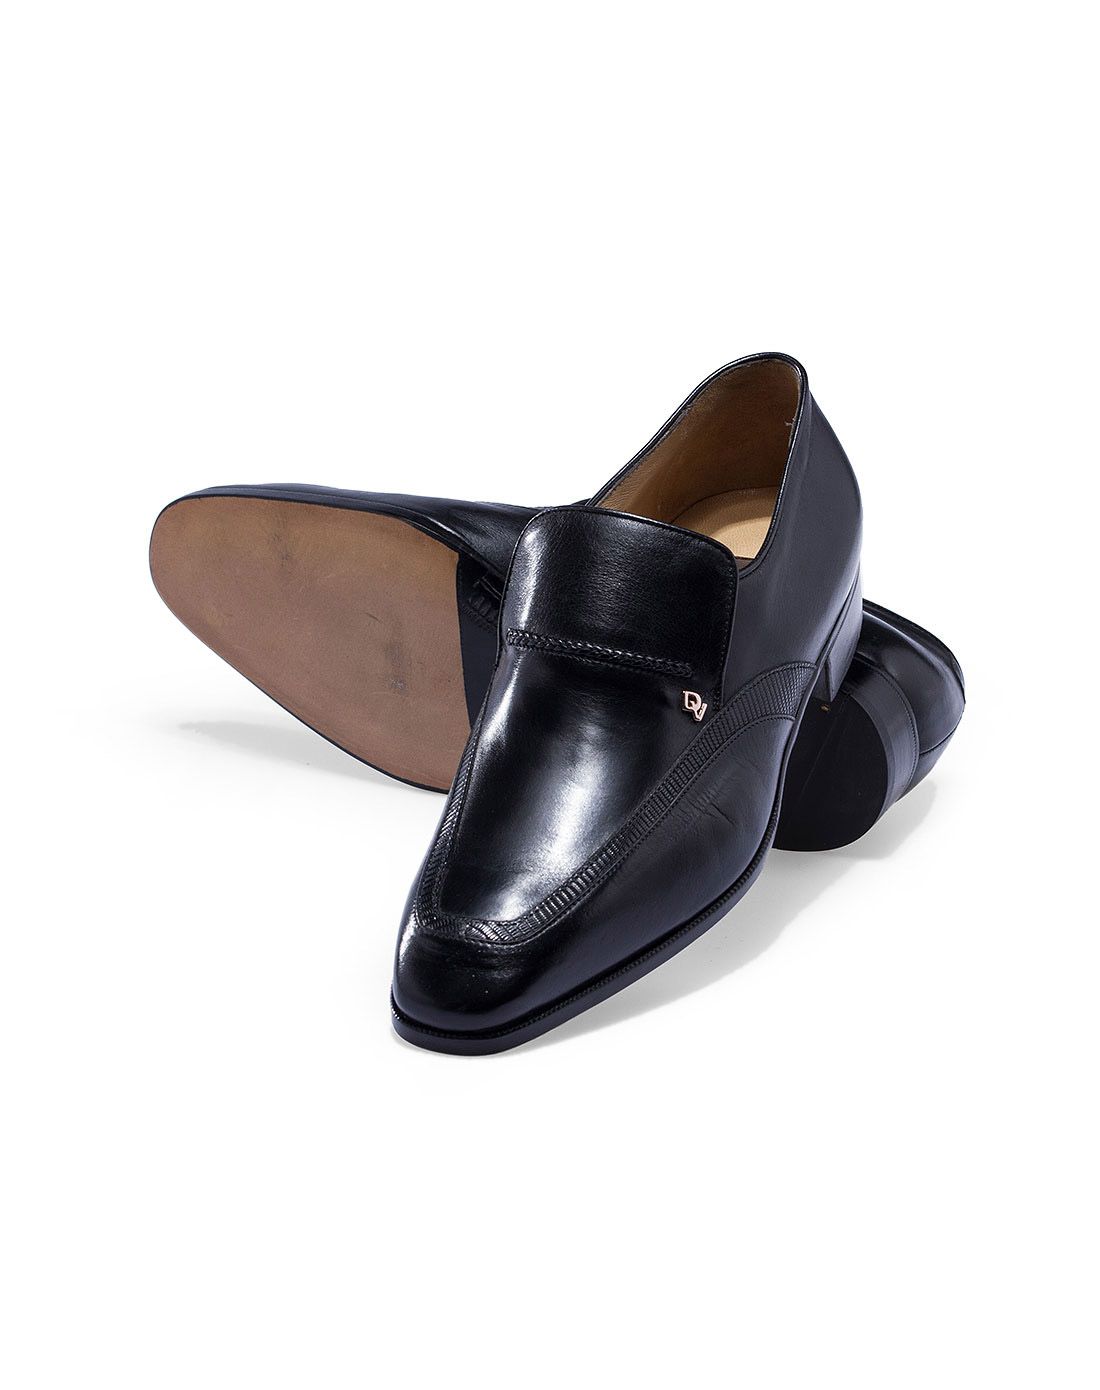 欧洲原装进口dv&braking男鞋de verli意大利进口黑色袋鼠皮正装单鞋